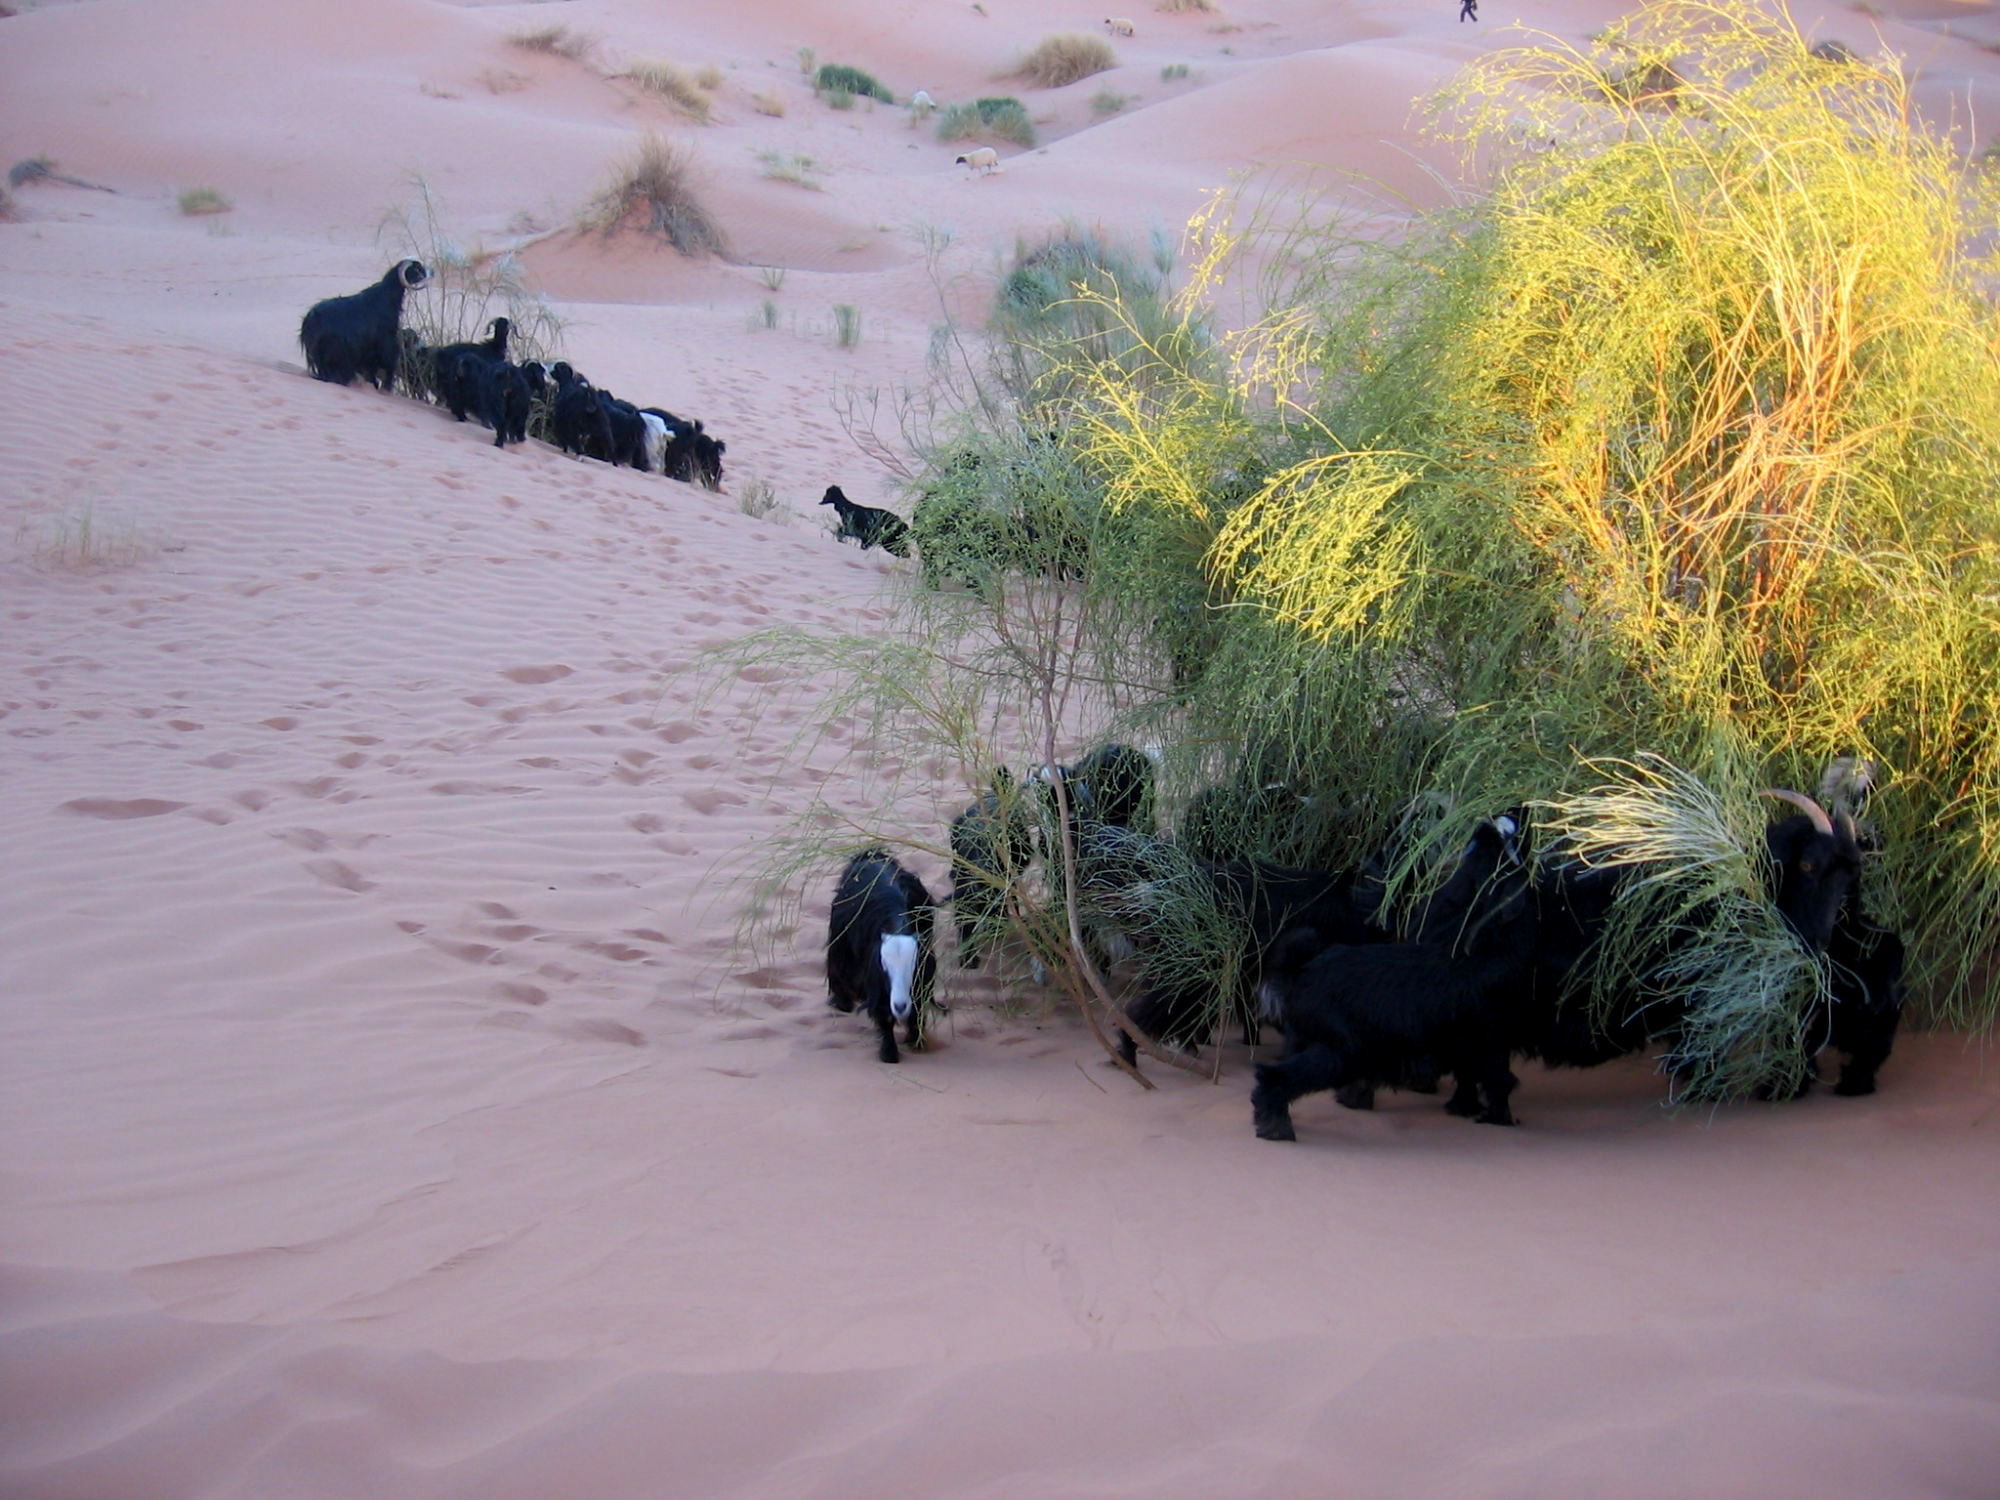 zvířata v poušti - vision quest na Sahaře 2012